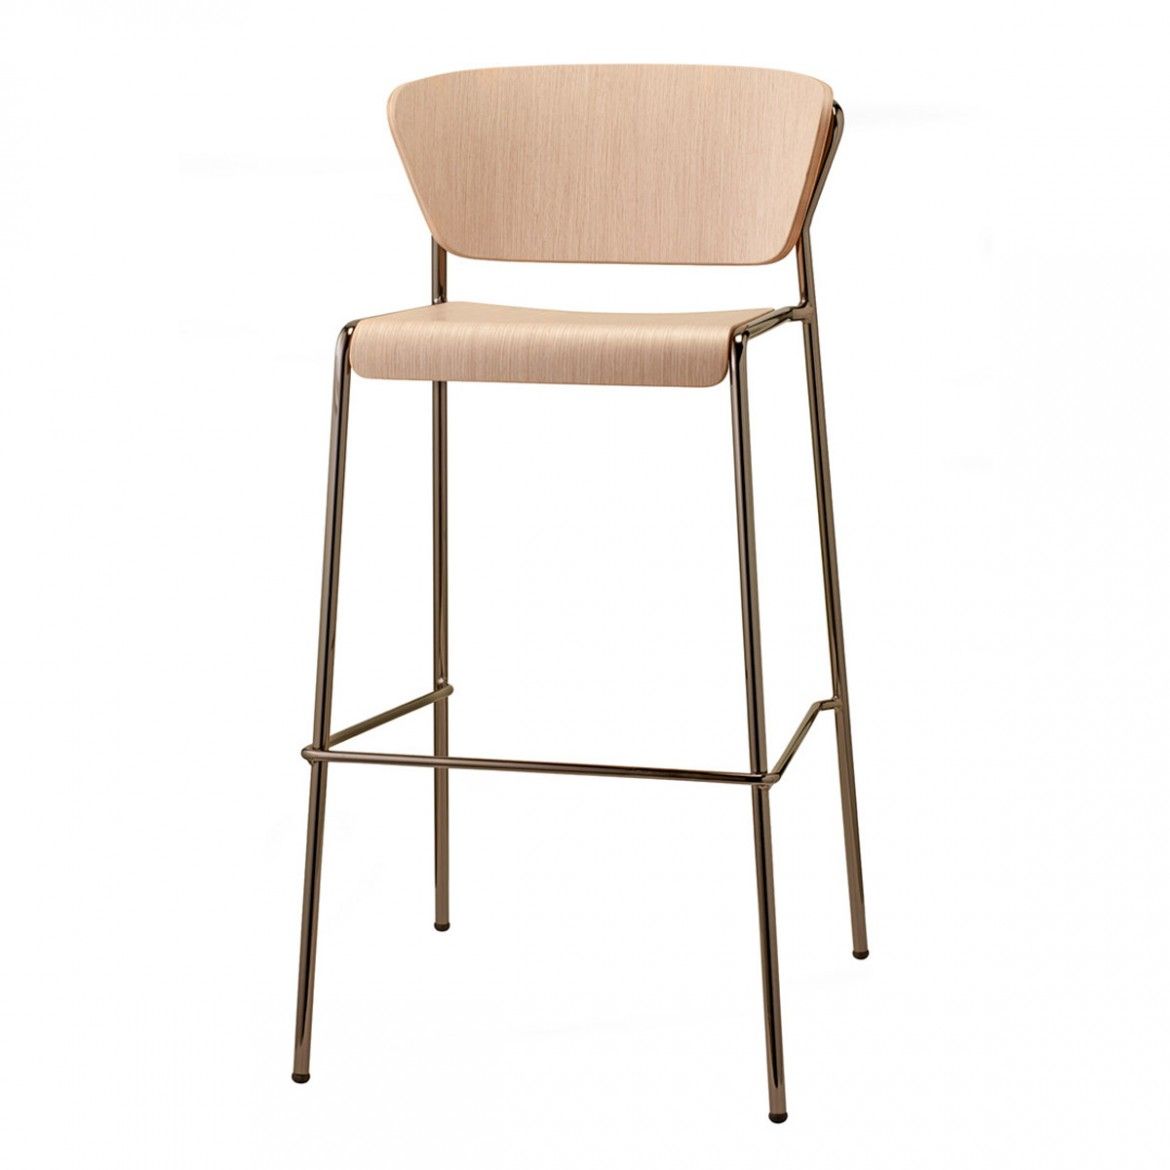 SCAB - Barová židle LISA WOOD vysoká - bělený buk/nikl - 